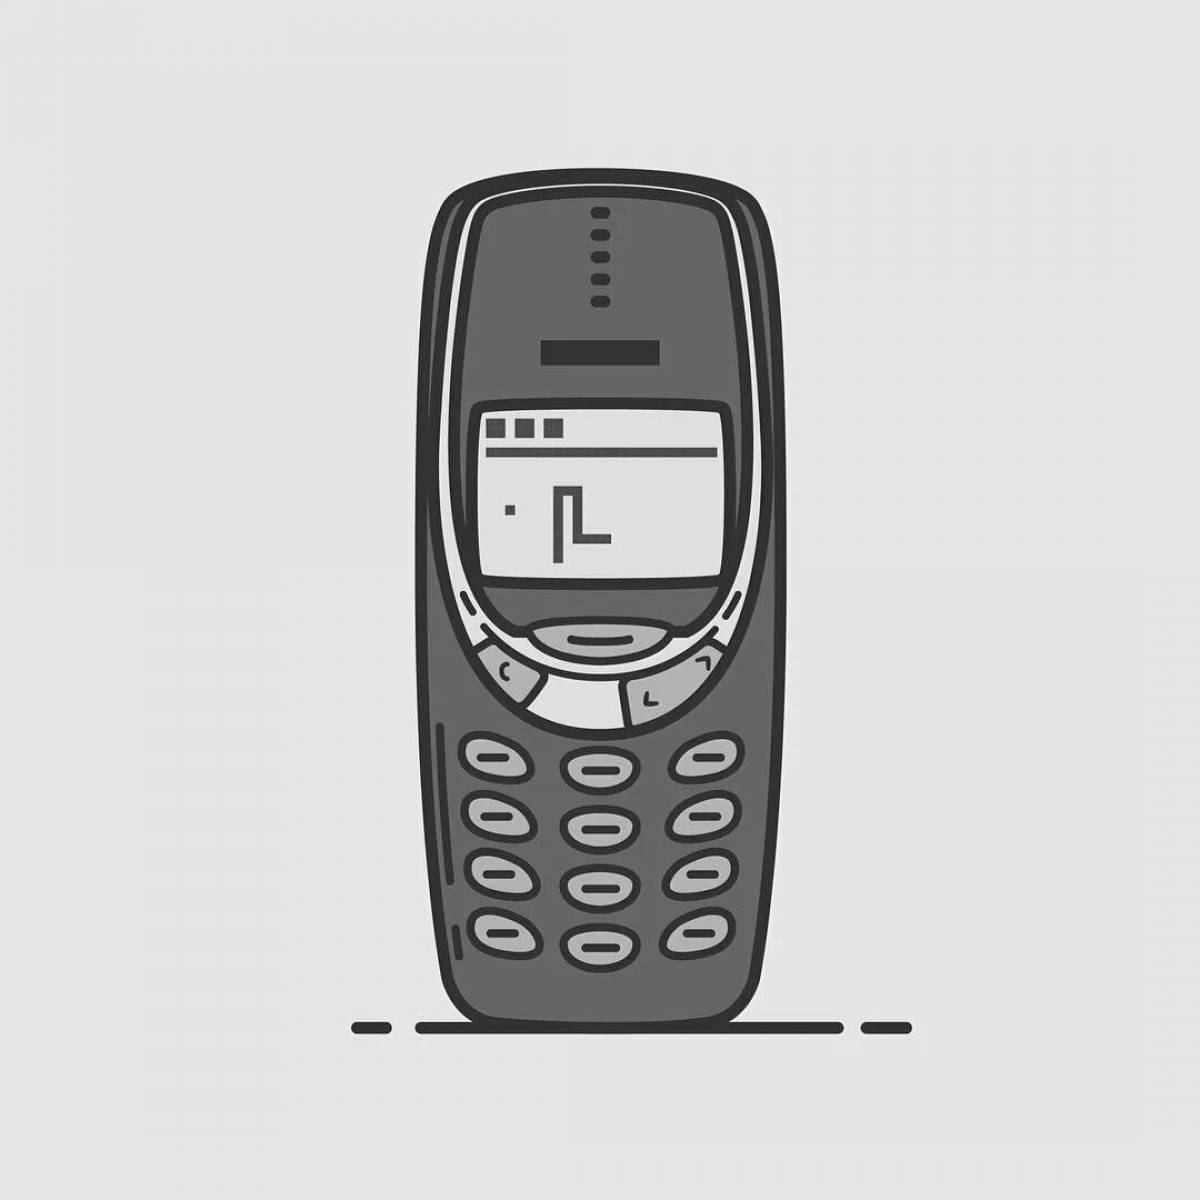 Nokia 3310 vector